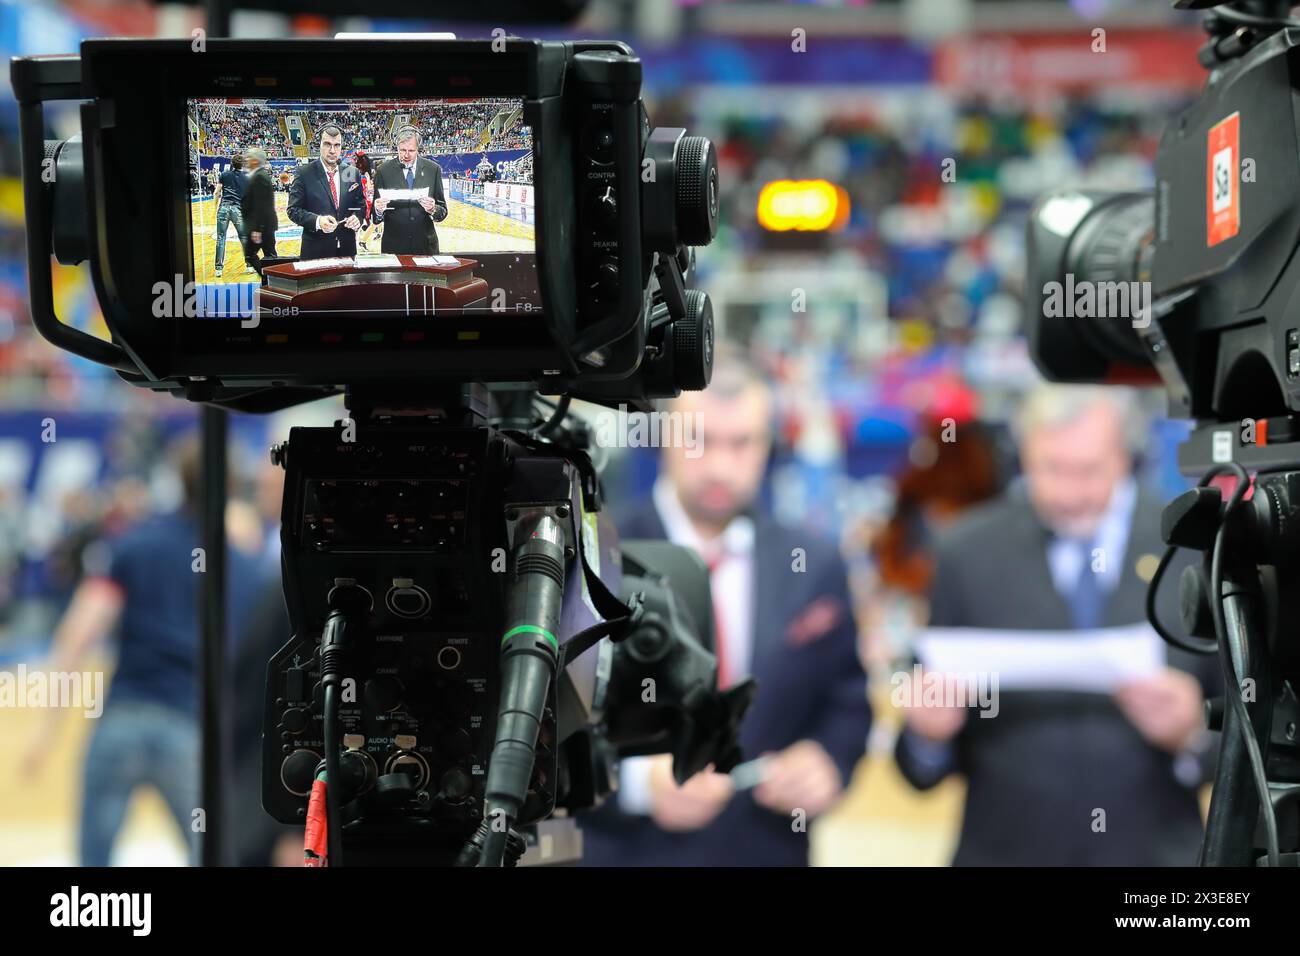 Zwei Kommentatoren bei der Kamera zeigen beim Basketballspiel im Stadion Stockfoto